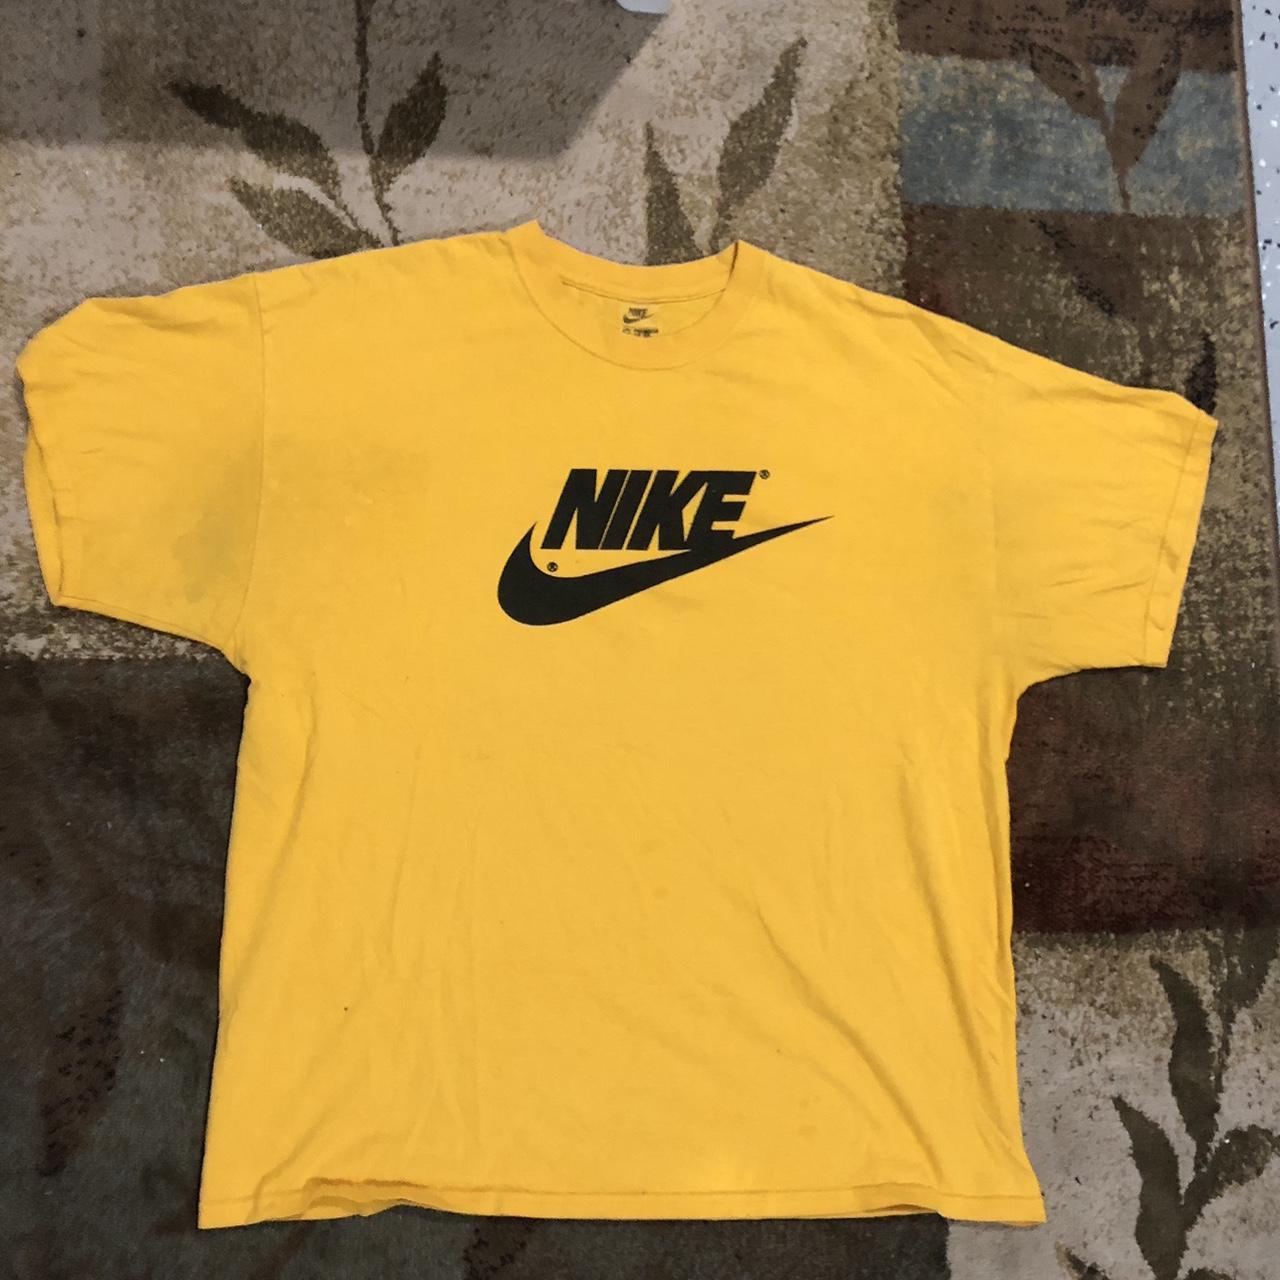 Nike Men's T-Shirt - Yellow - XL